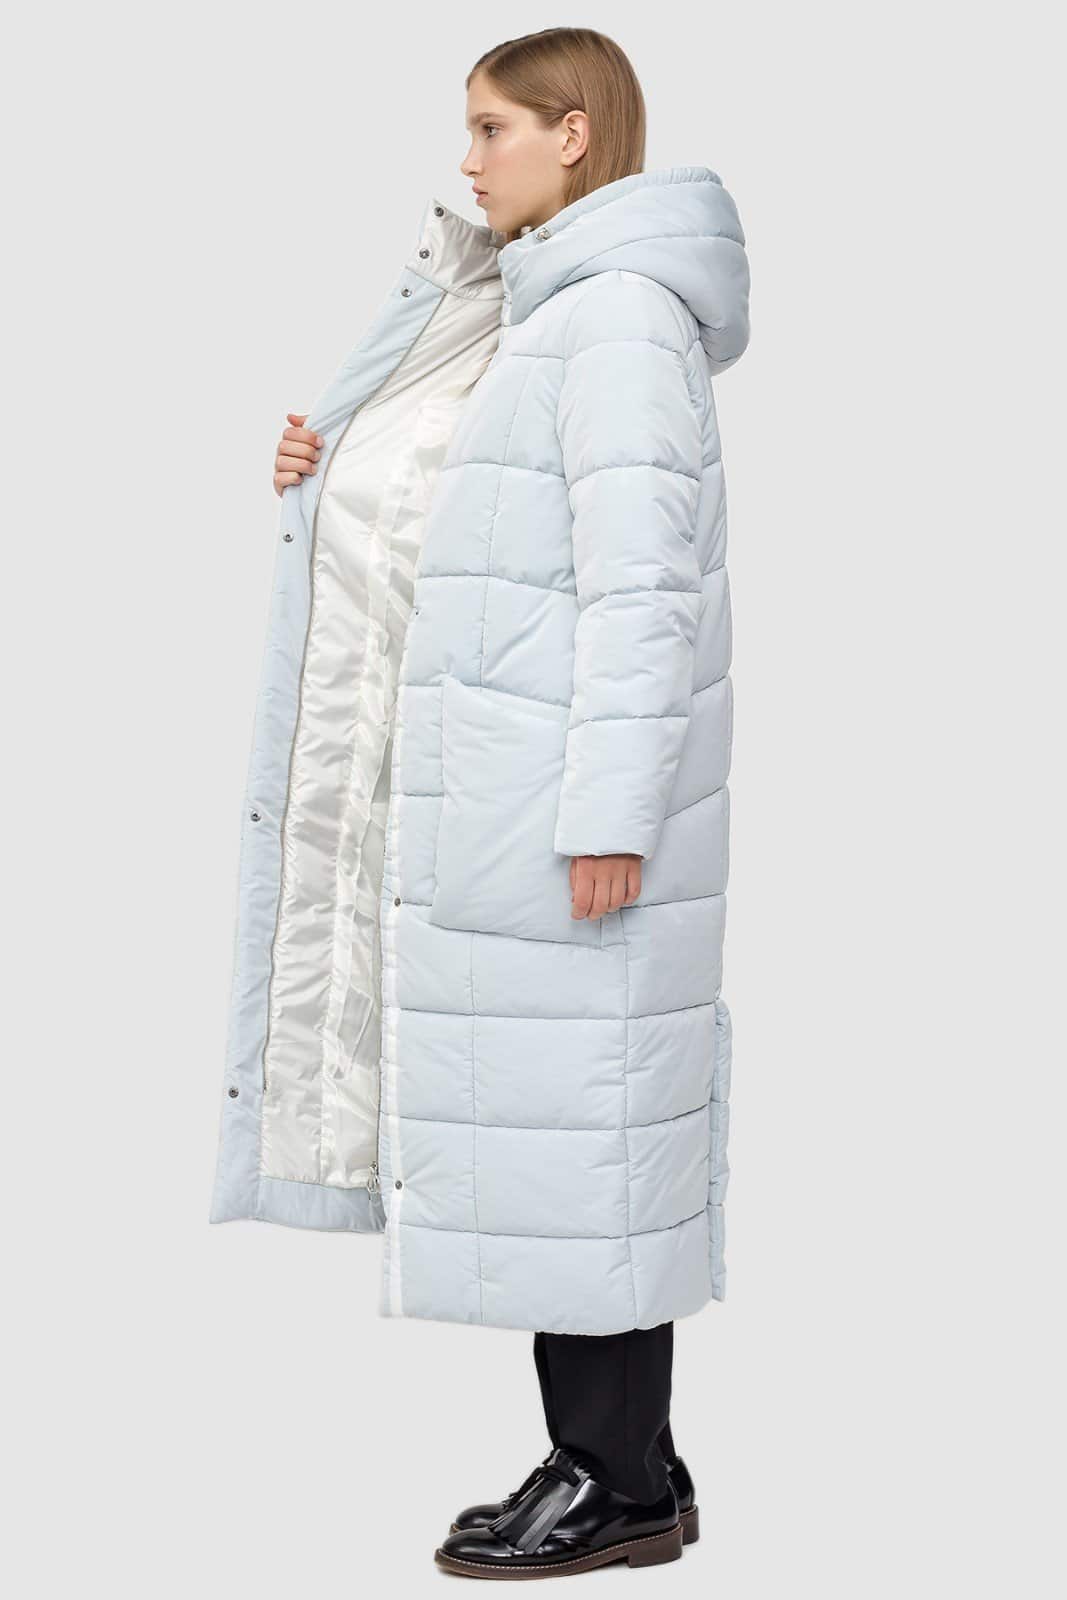 Пальто оверсайз - 5 стильных миксов для зимы